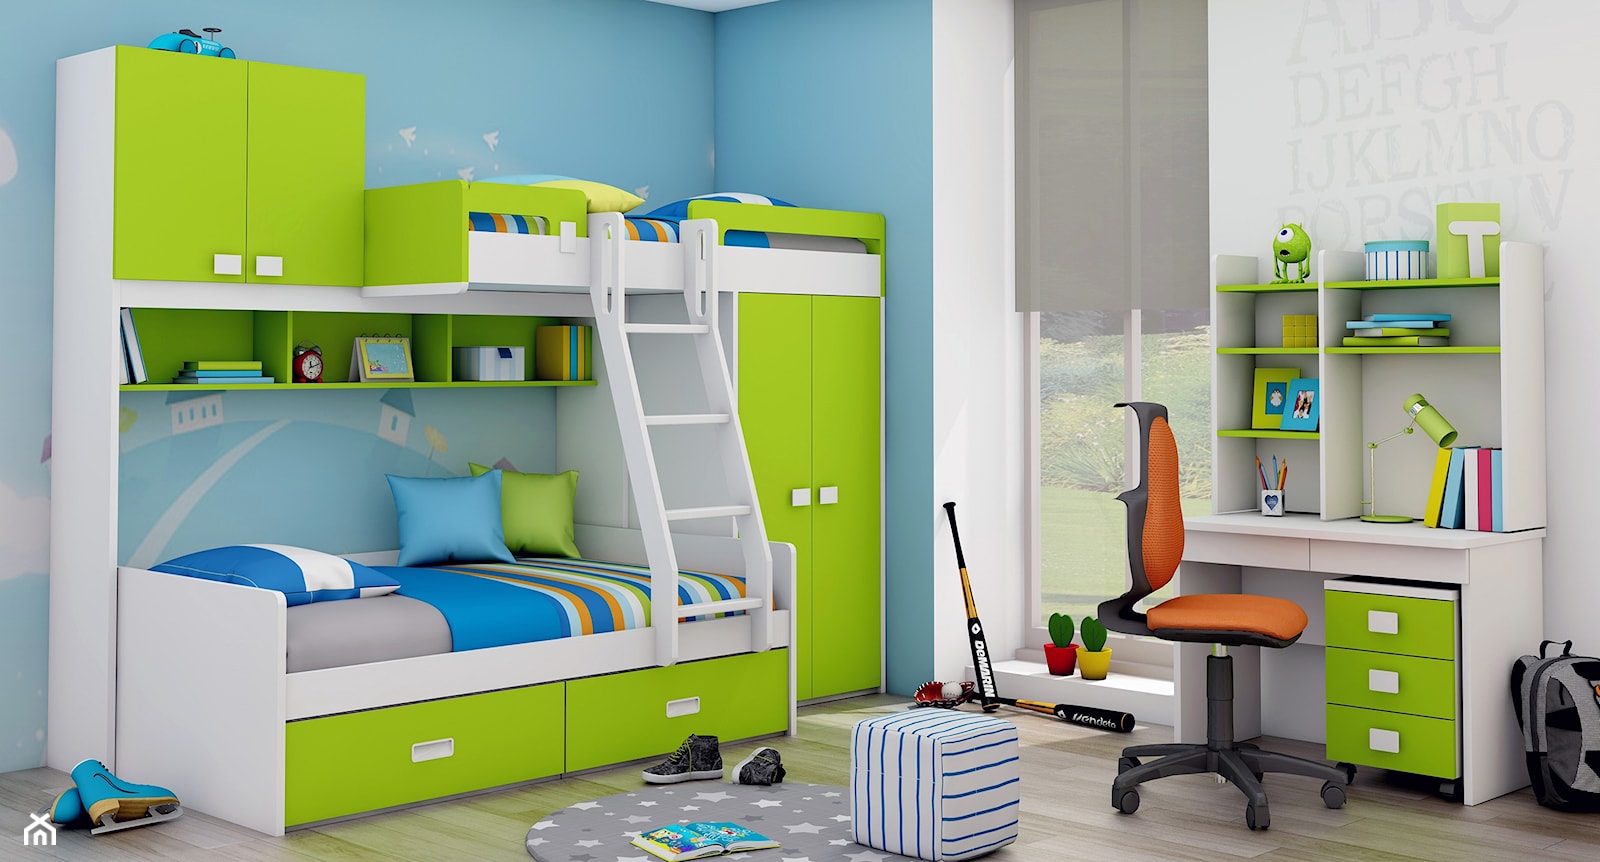 Łóżko piętrowe dla dzieci z szafą, półkami, regałem, szufladami i drabinką. - zdjęcie od Elies.pl - Homebook